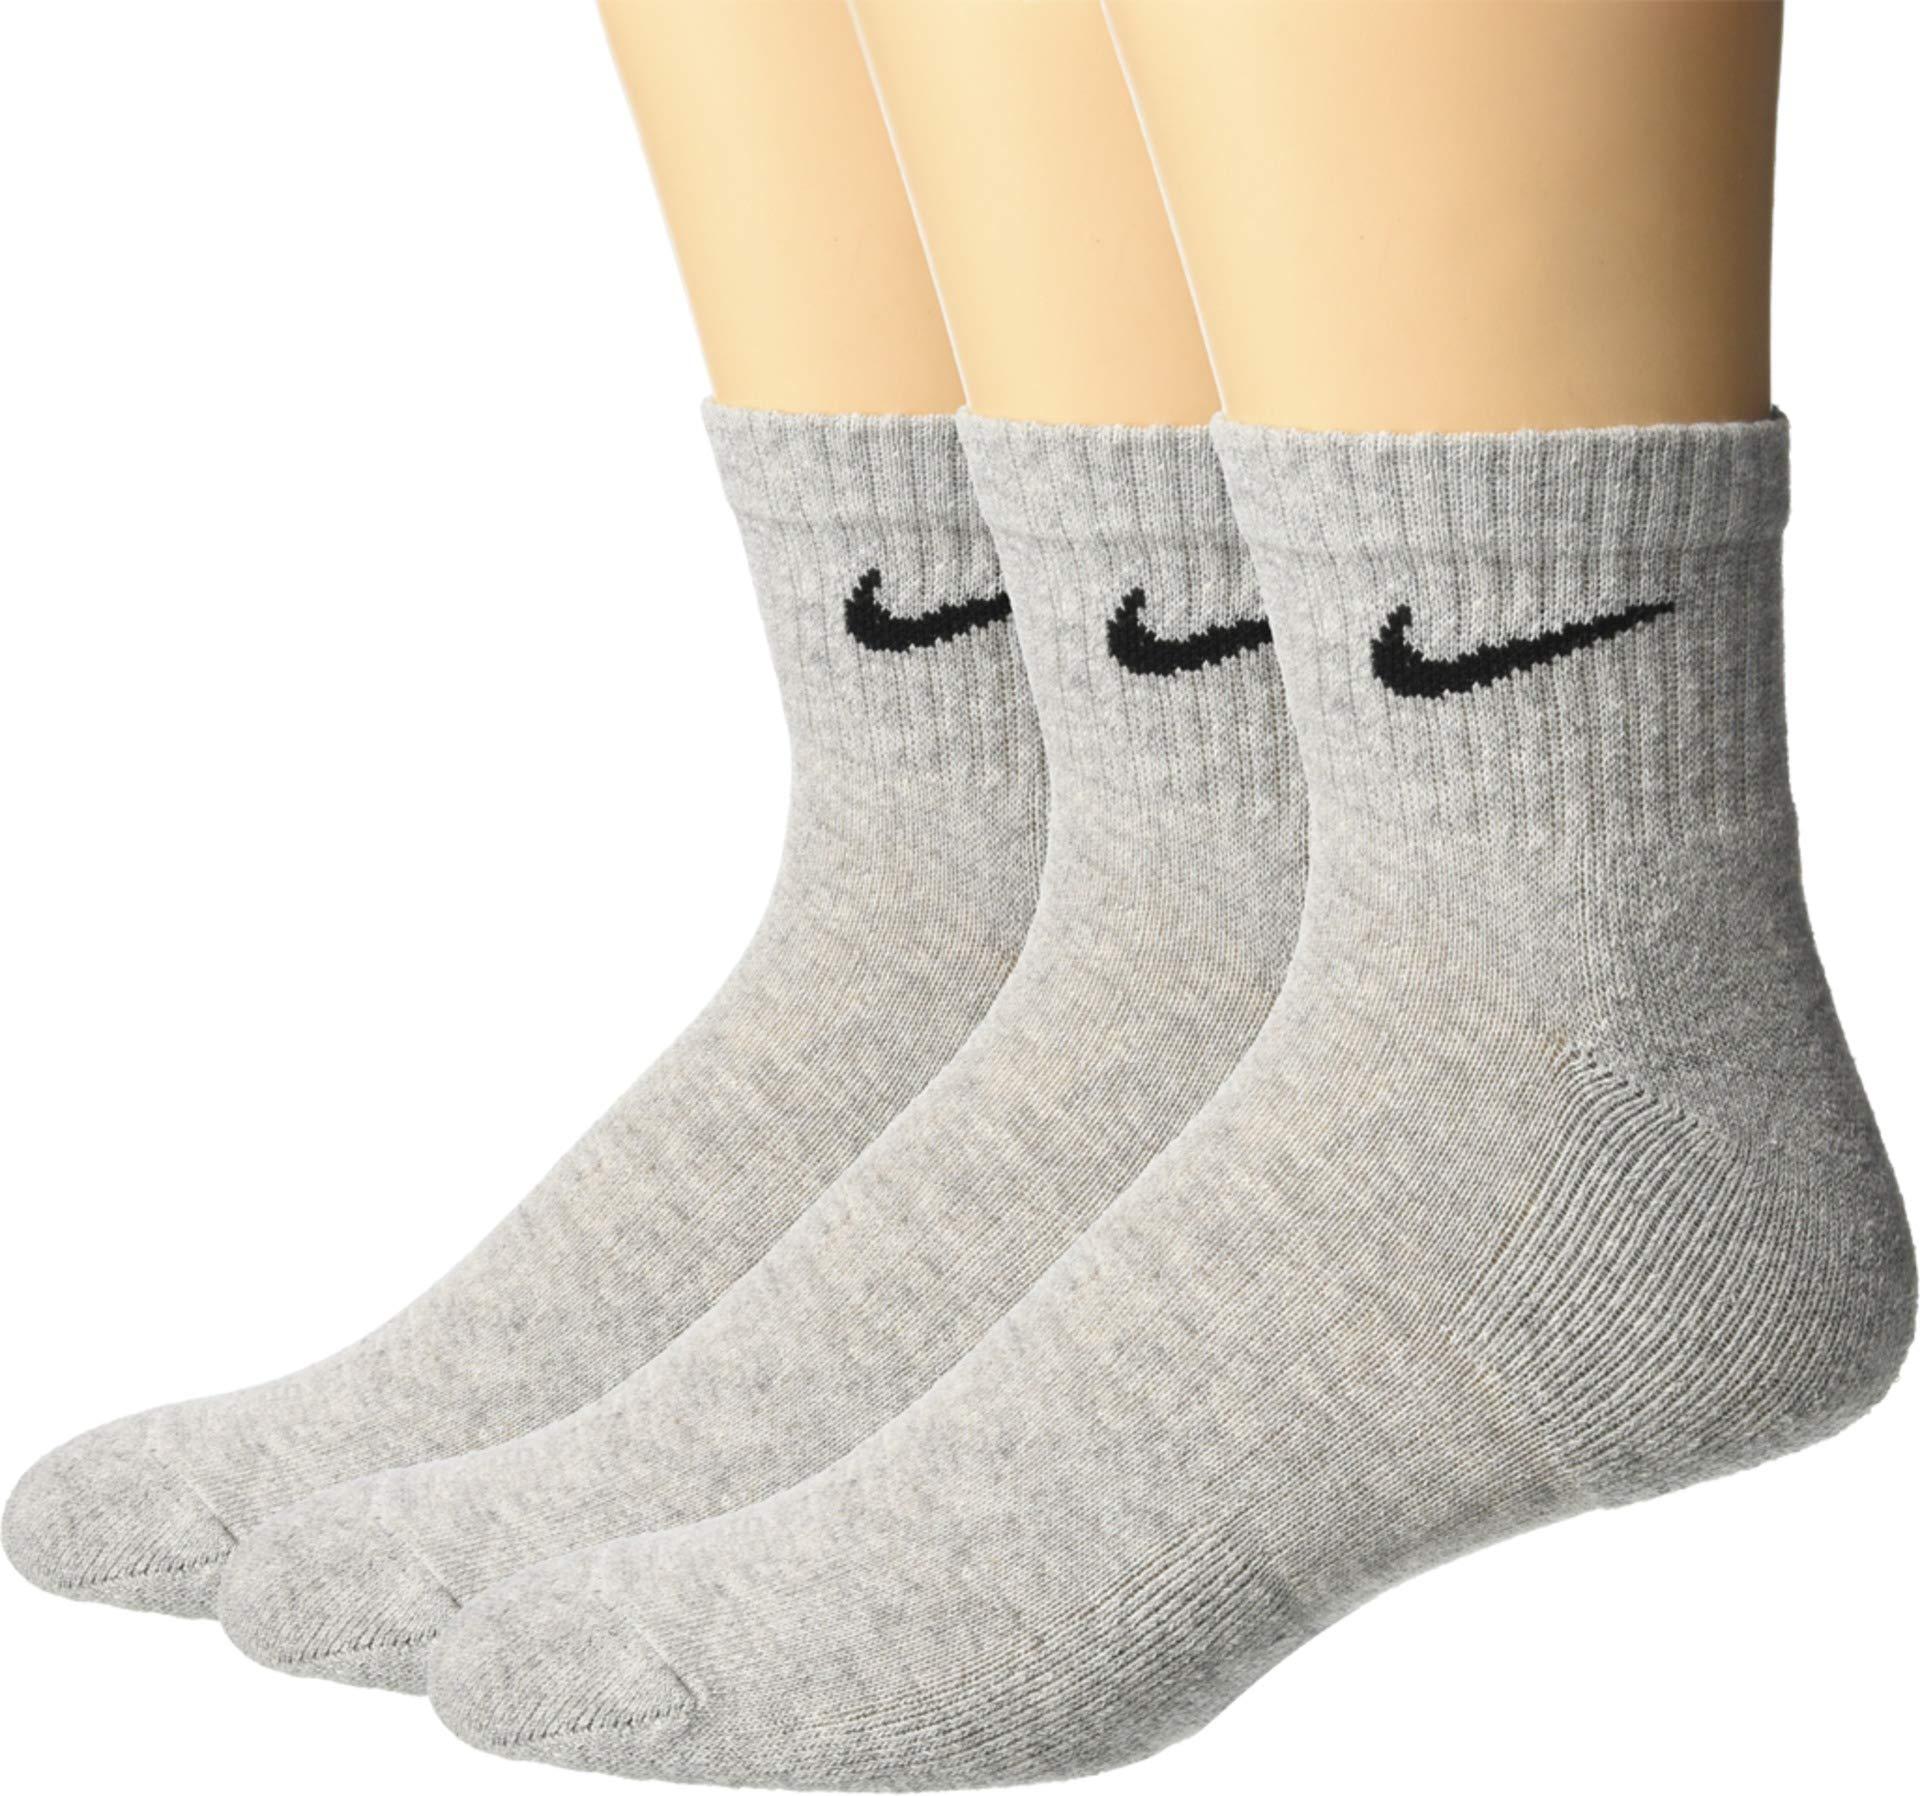 nike ankle socks on feet